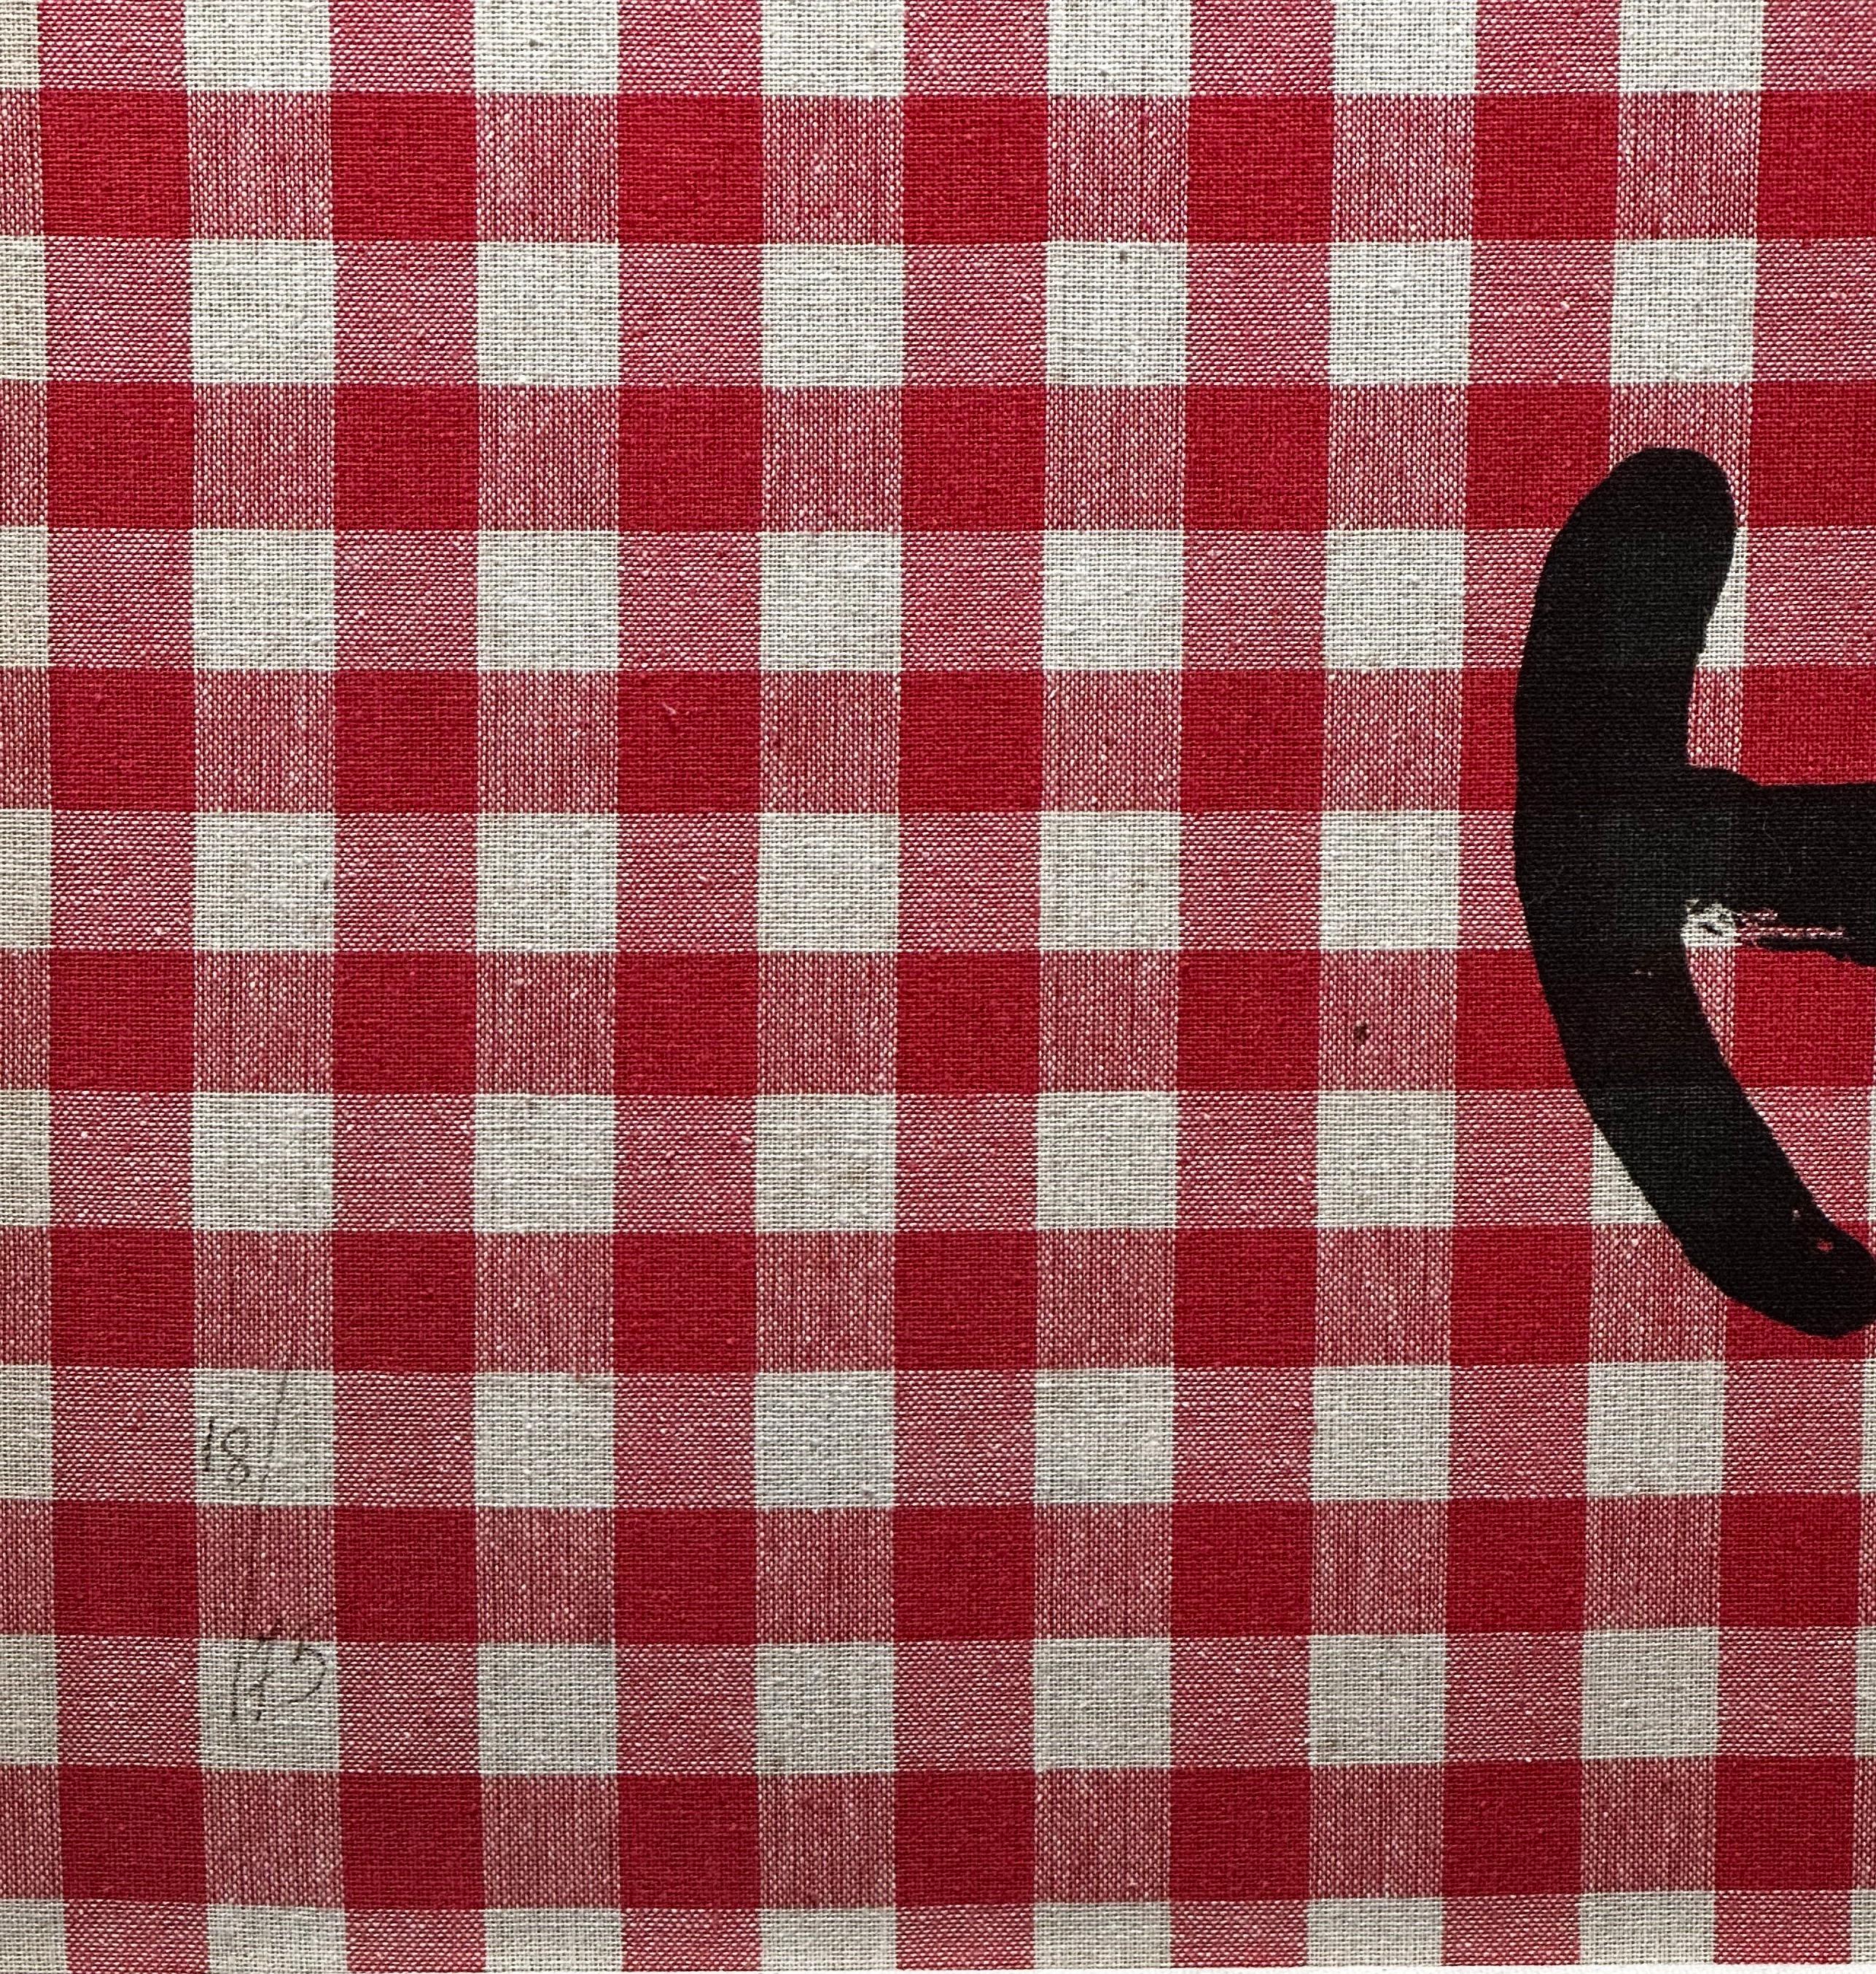 Künstler: Joan Miro
Titel: L'Illetre Aux Carreaux Rouges
Medium:  Farblithografie auf rot-weißem Tuch auf Mandeure Chiffon auf Karton montiert
Größe: 24,37 x 32,25 Zoll 
Unterschrieben:  Handsigniert
Auflage: 18/75
Herausgeber: Maeght,